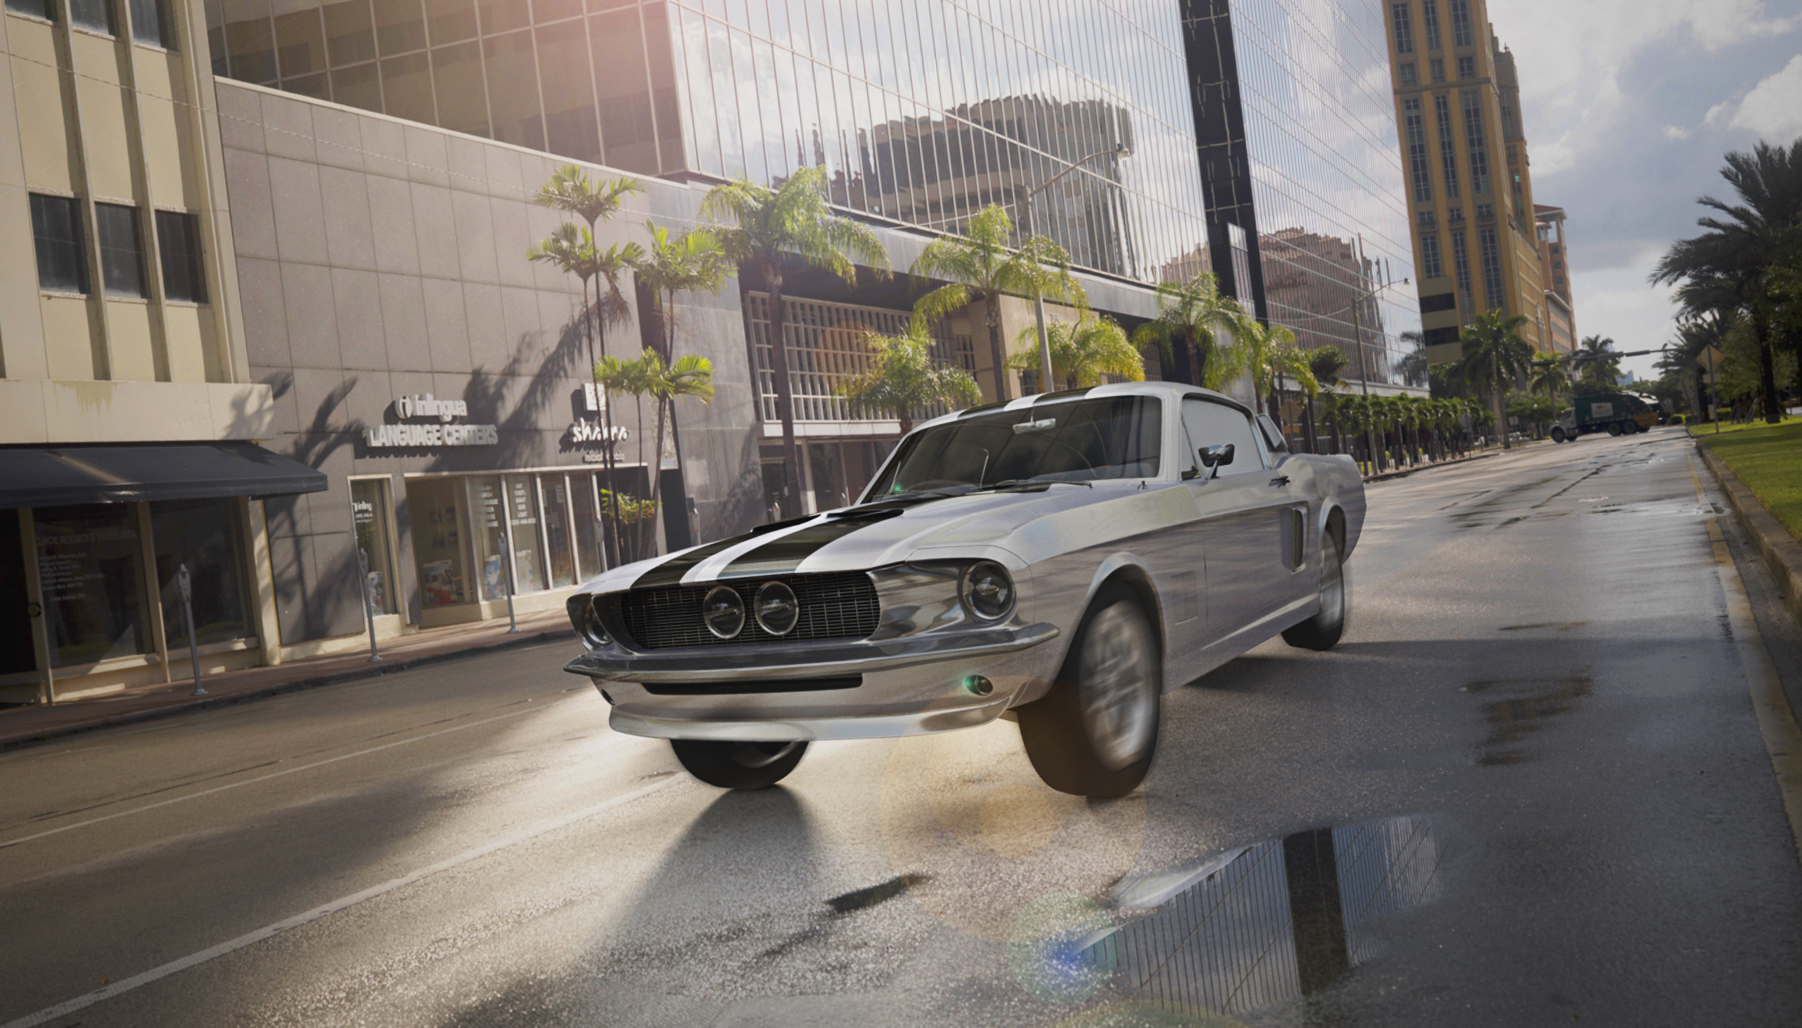 3D-Visualisierung eines Mustang shelby GT500 aus dem Jahre 1967, der an Hochhäusern und Palmen vorbei fährt